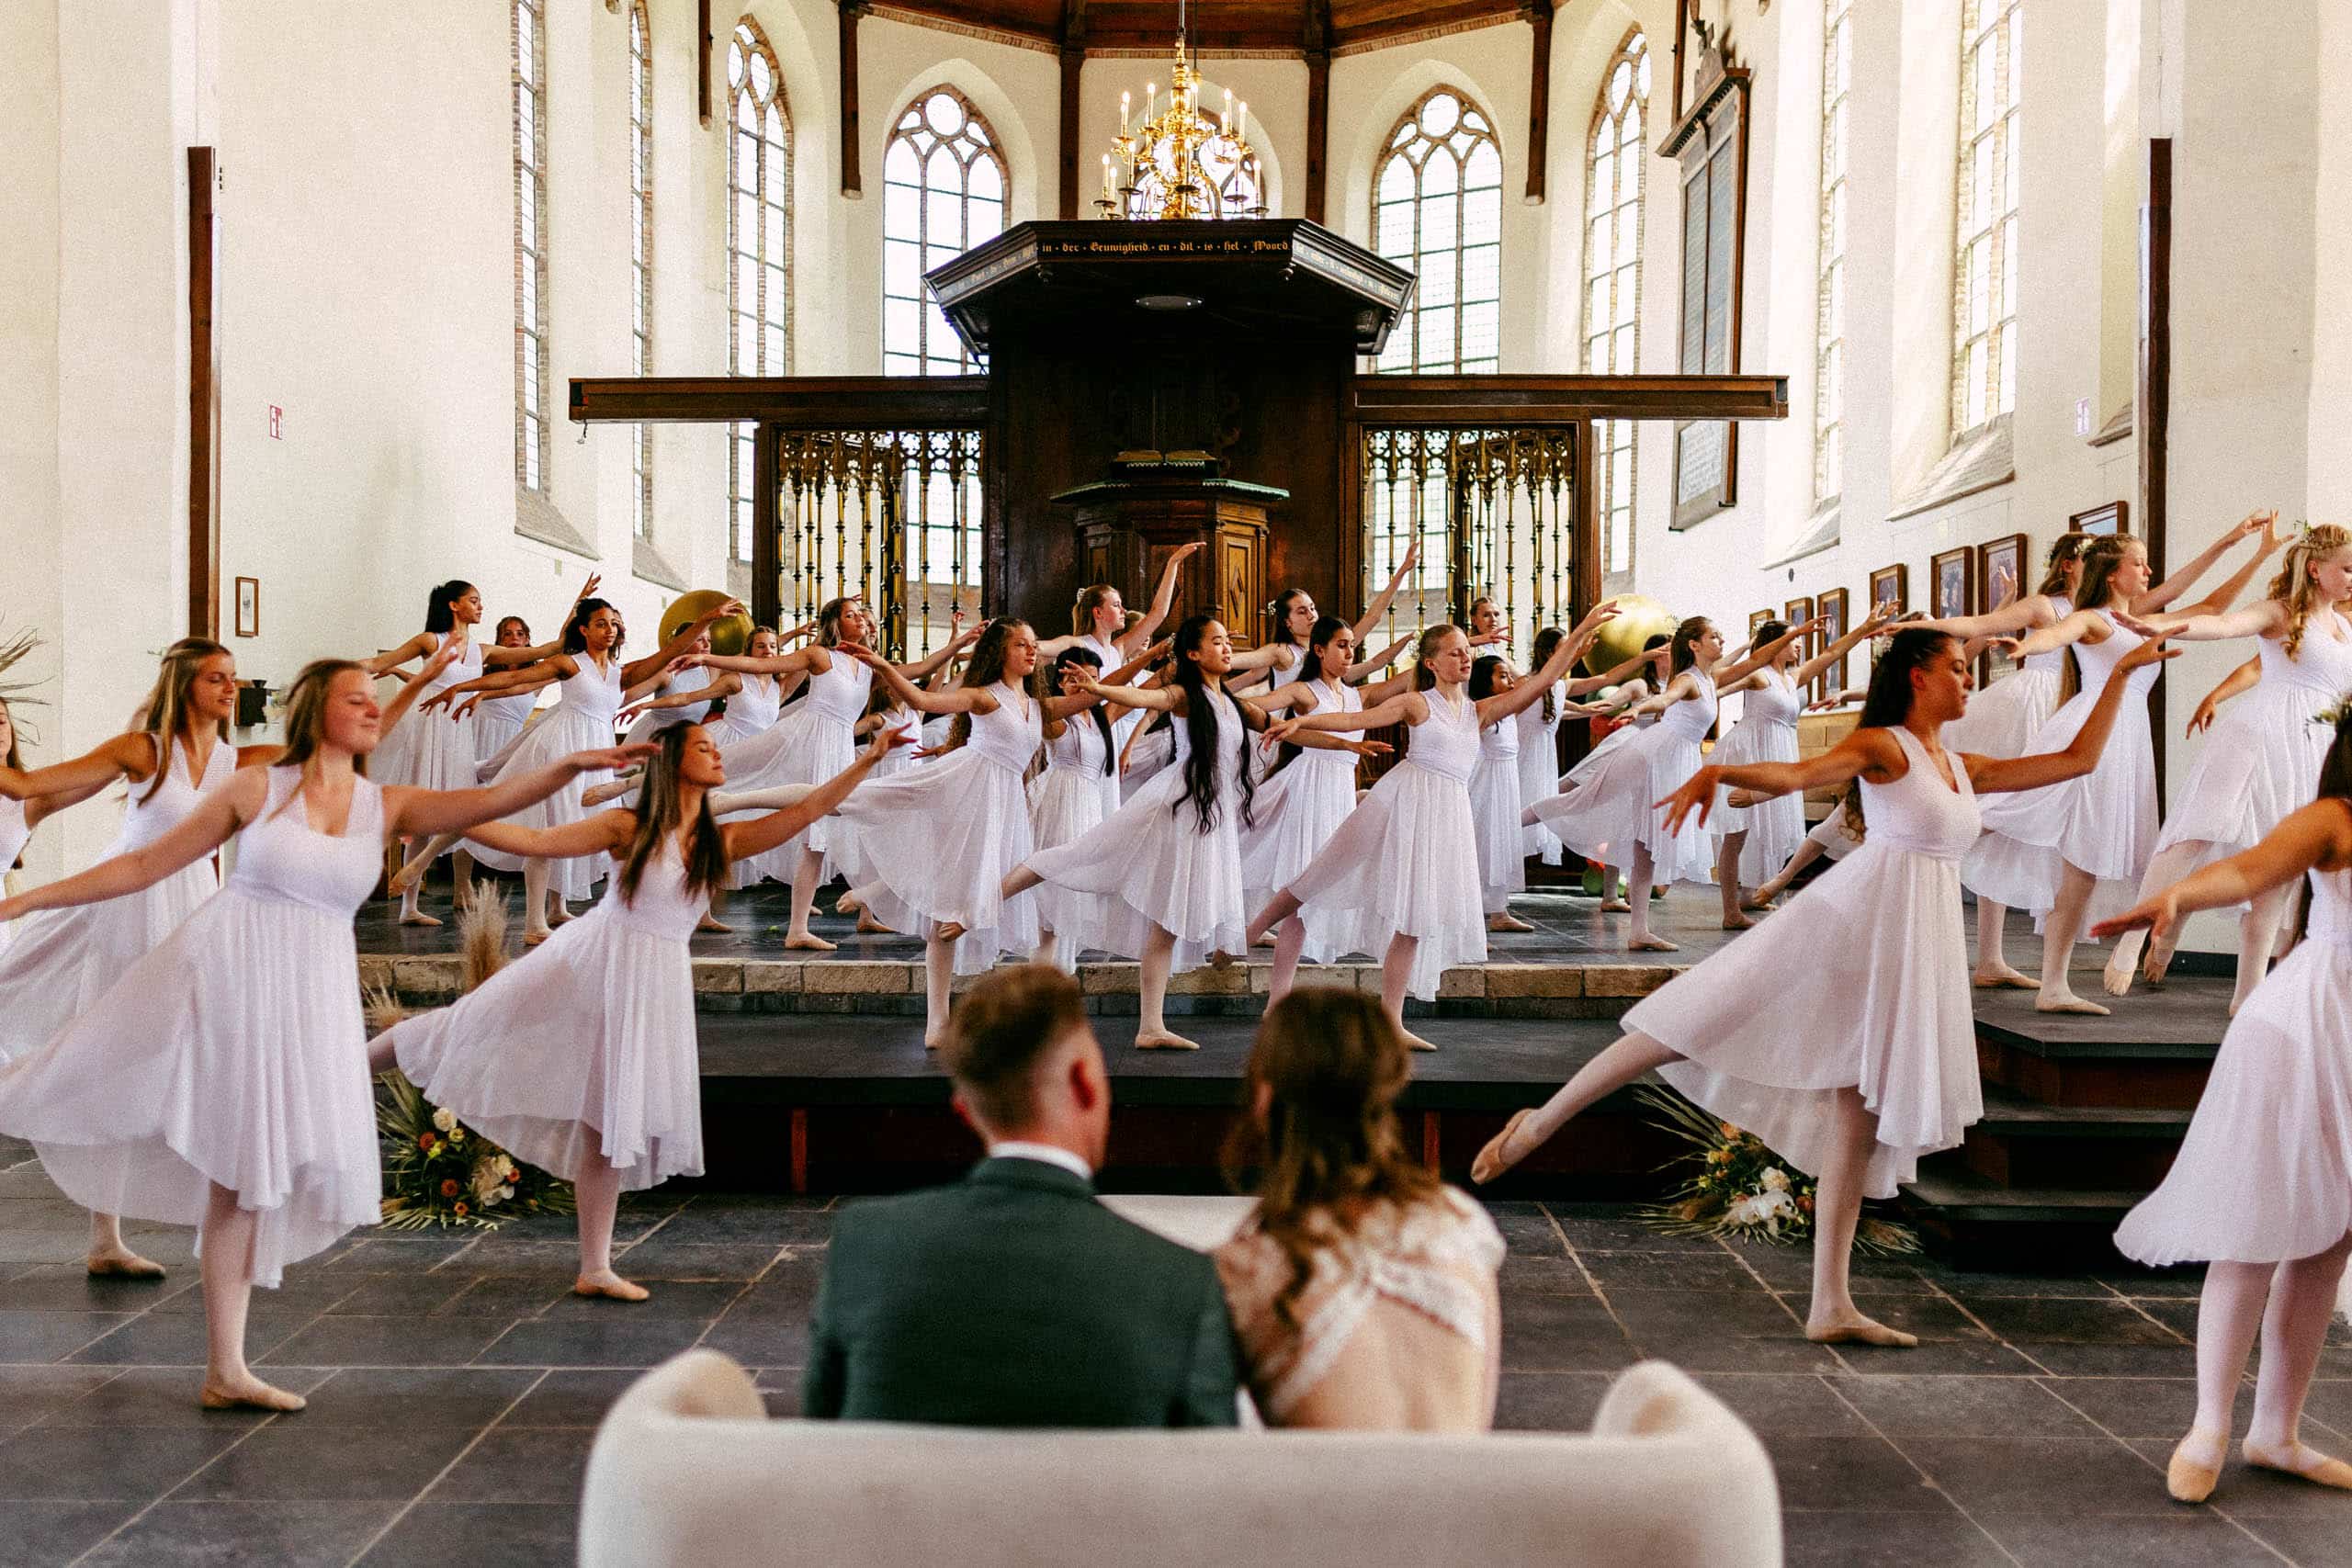 Een groep dansers in witte jurken treedt op in een kerk.